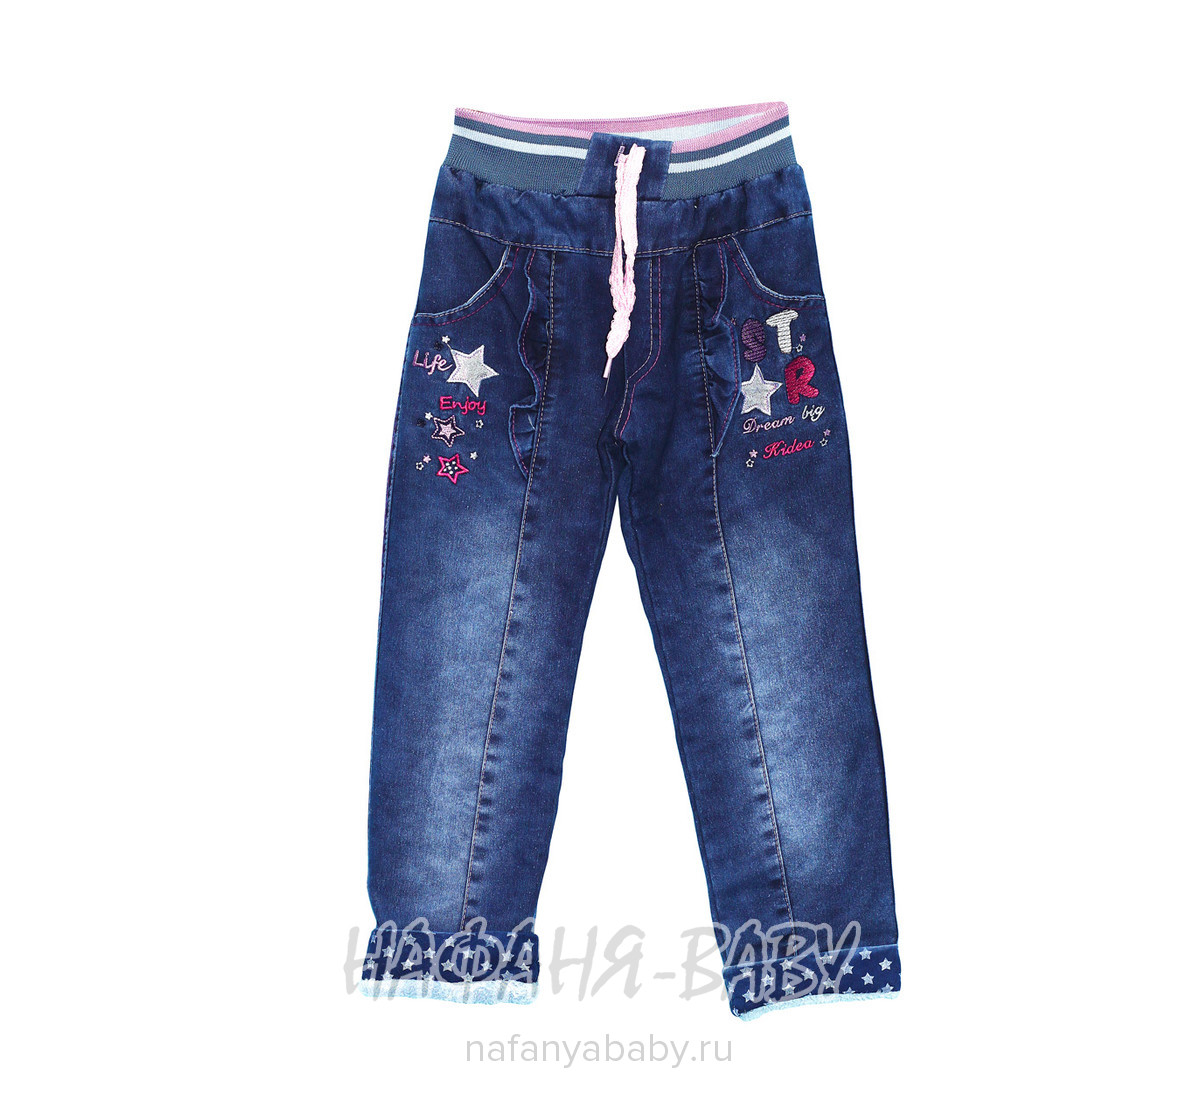 Детские утепленные джинсы Ridea, купить в интернет магазине Нафаня. арт: 19710.